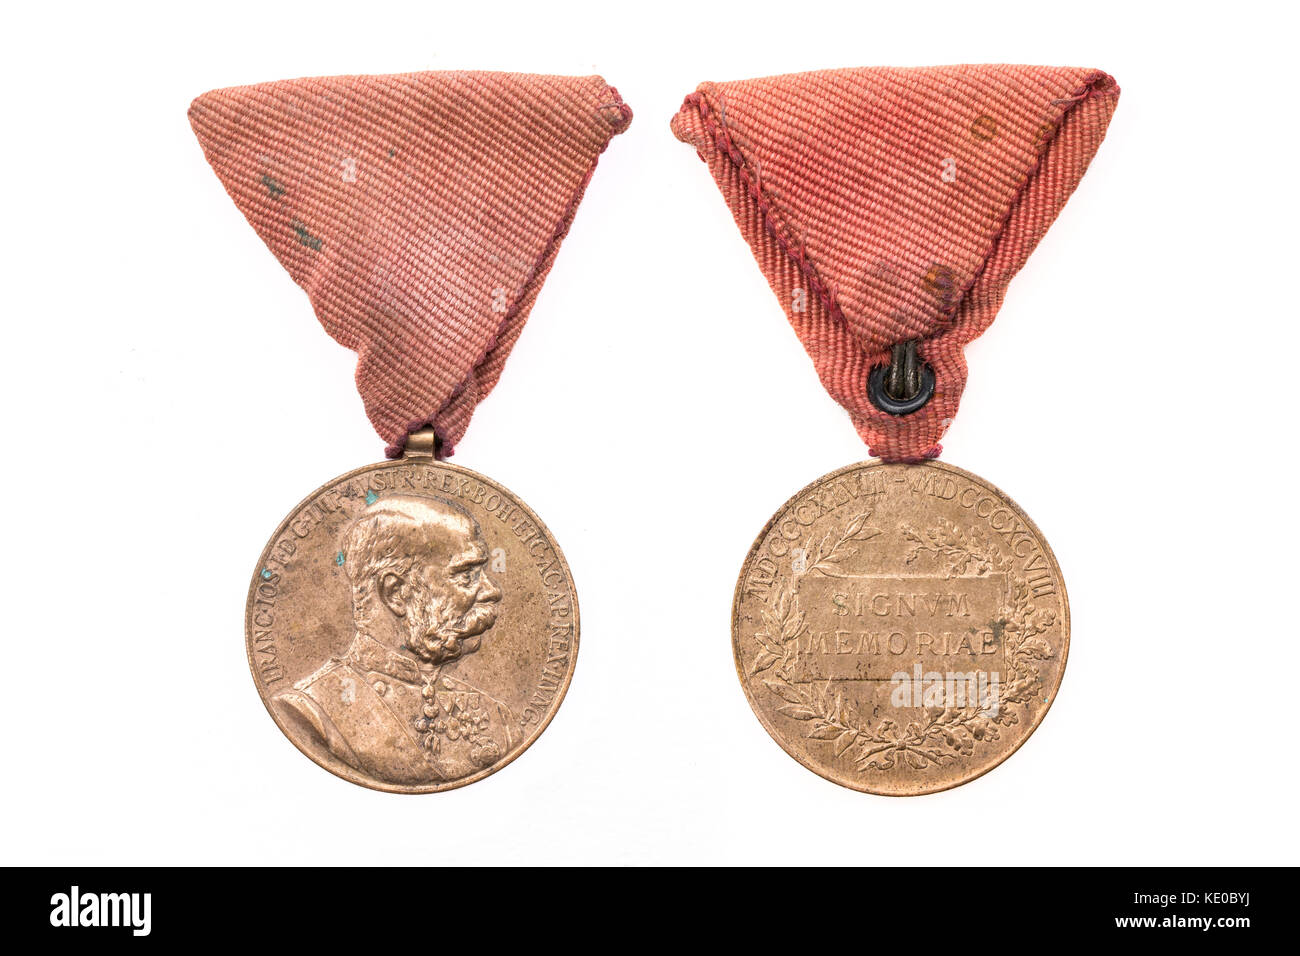 Österreichische Medaille zu Ehren von Weltkrieg 1 Österreich - Ungarn vs Frankreich und Russland 1914-1918. Auch als 'Signum memoria" bekannt. Stockfoto